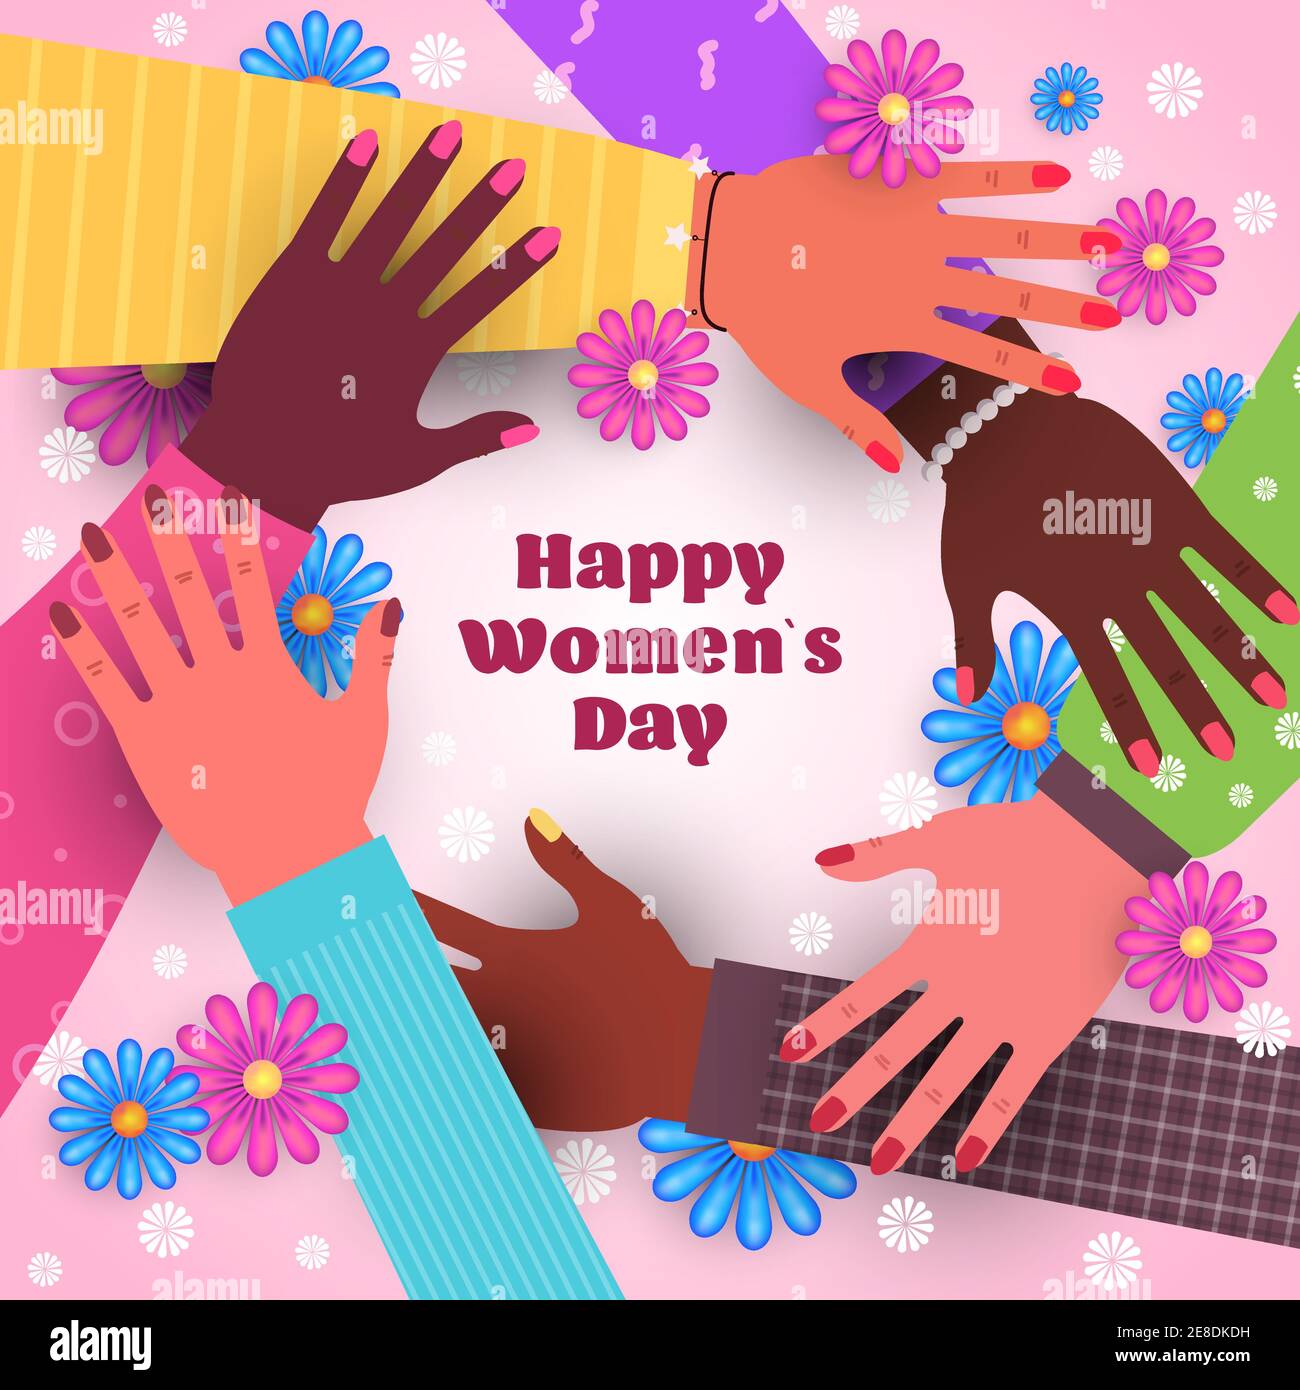 giornata internazionale delle donne 8 marzo festa celebrazione concept mix gara le mani femminili si tengono l'una con l'altra illustrazione vettoriale Illustrazione Vettoriale